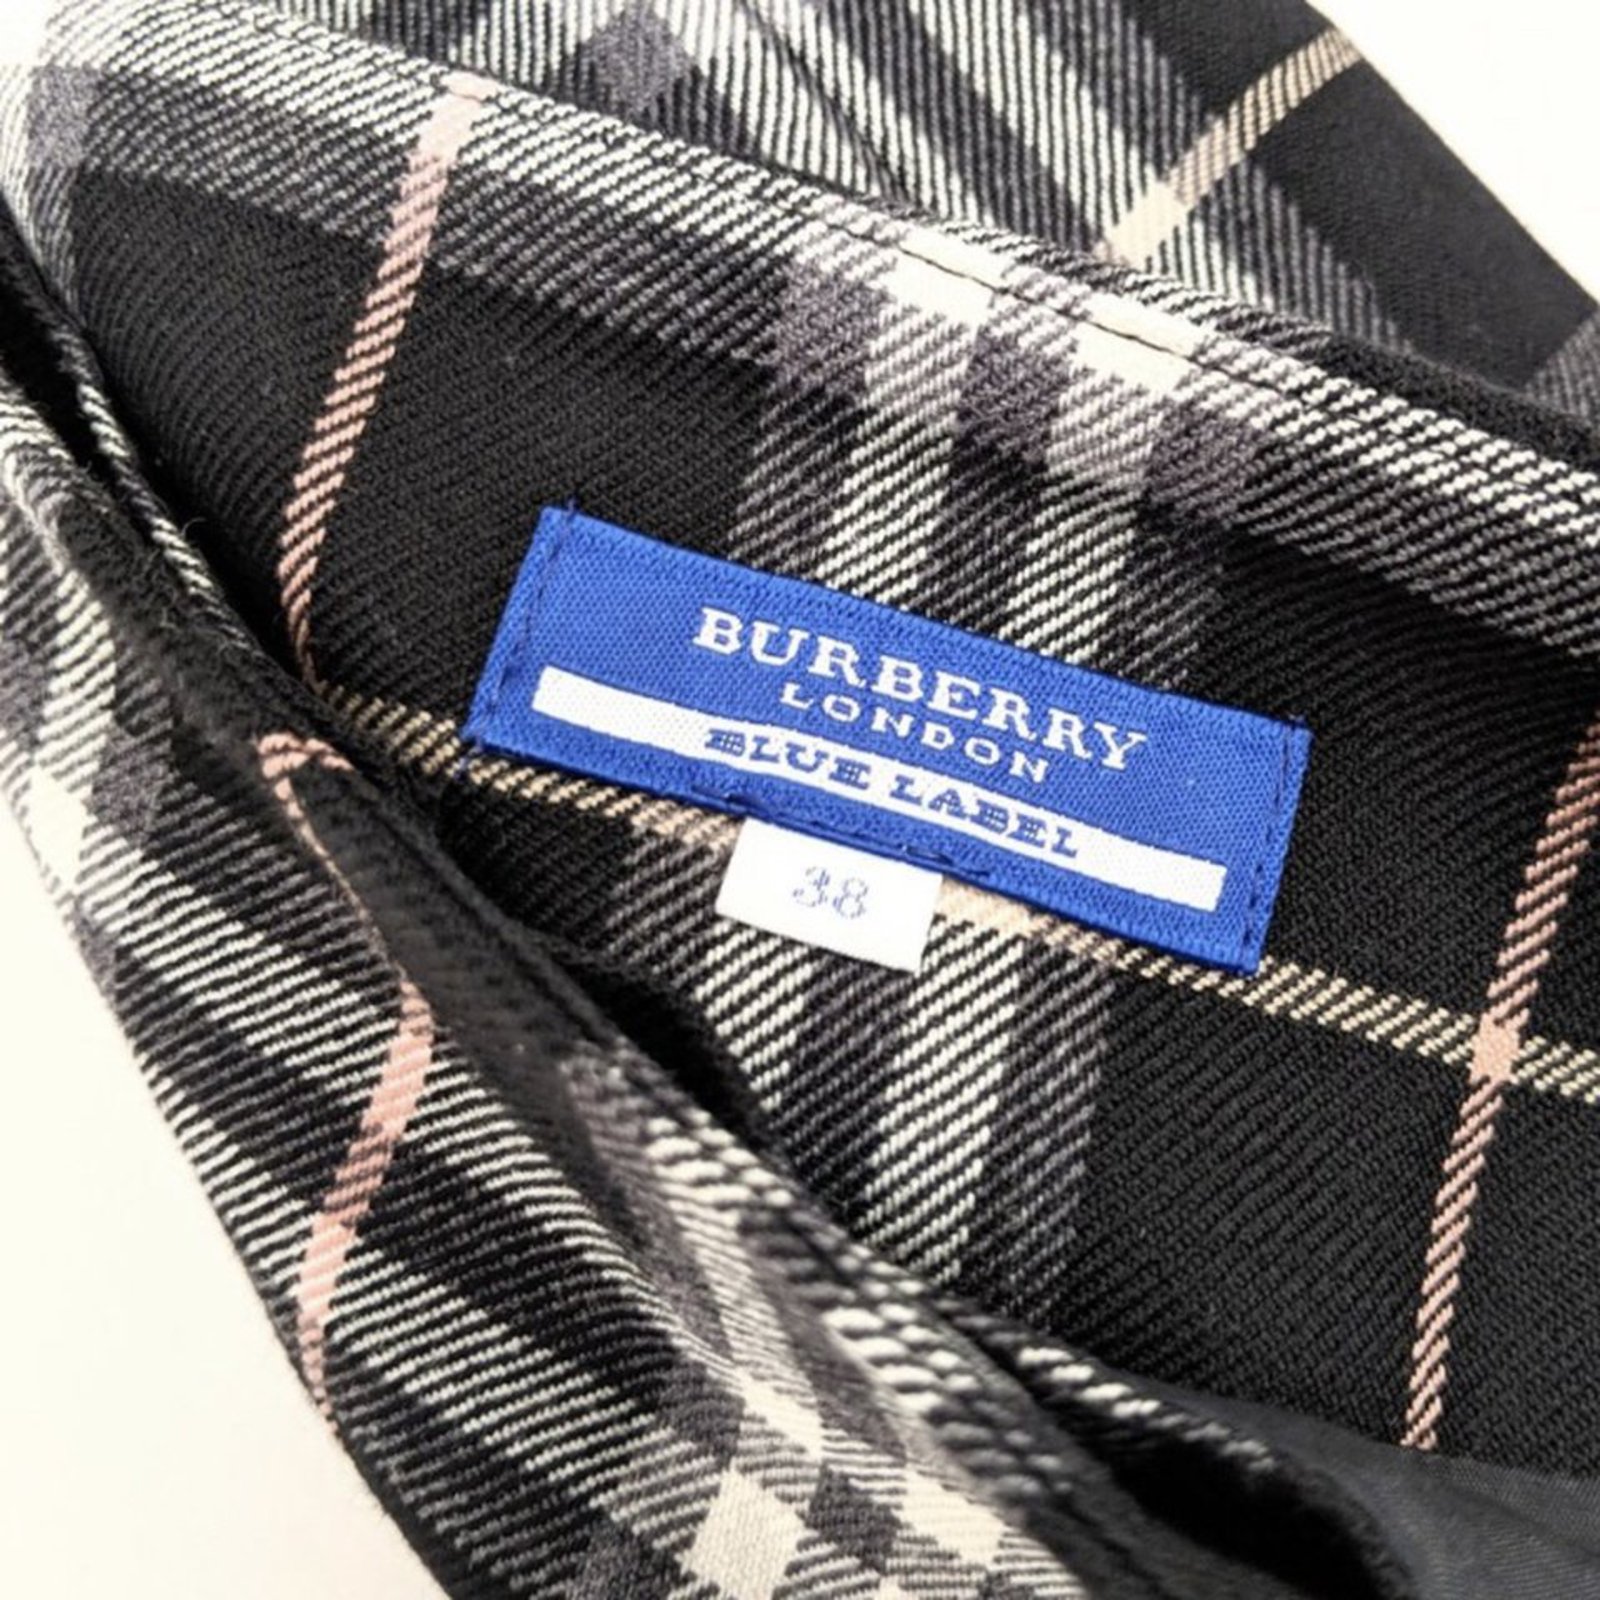 Burberry Blue Label Flash Sales, 56% OFF | campingcanyelles.com